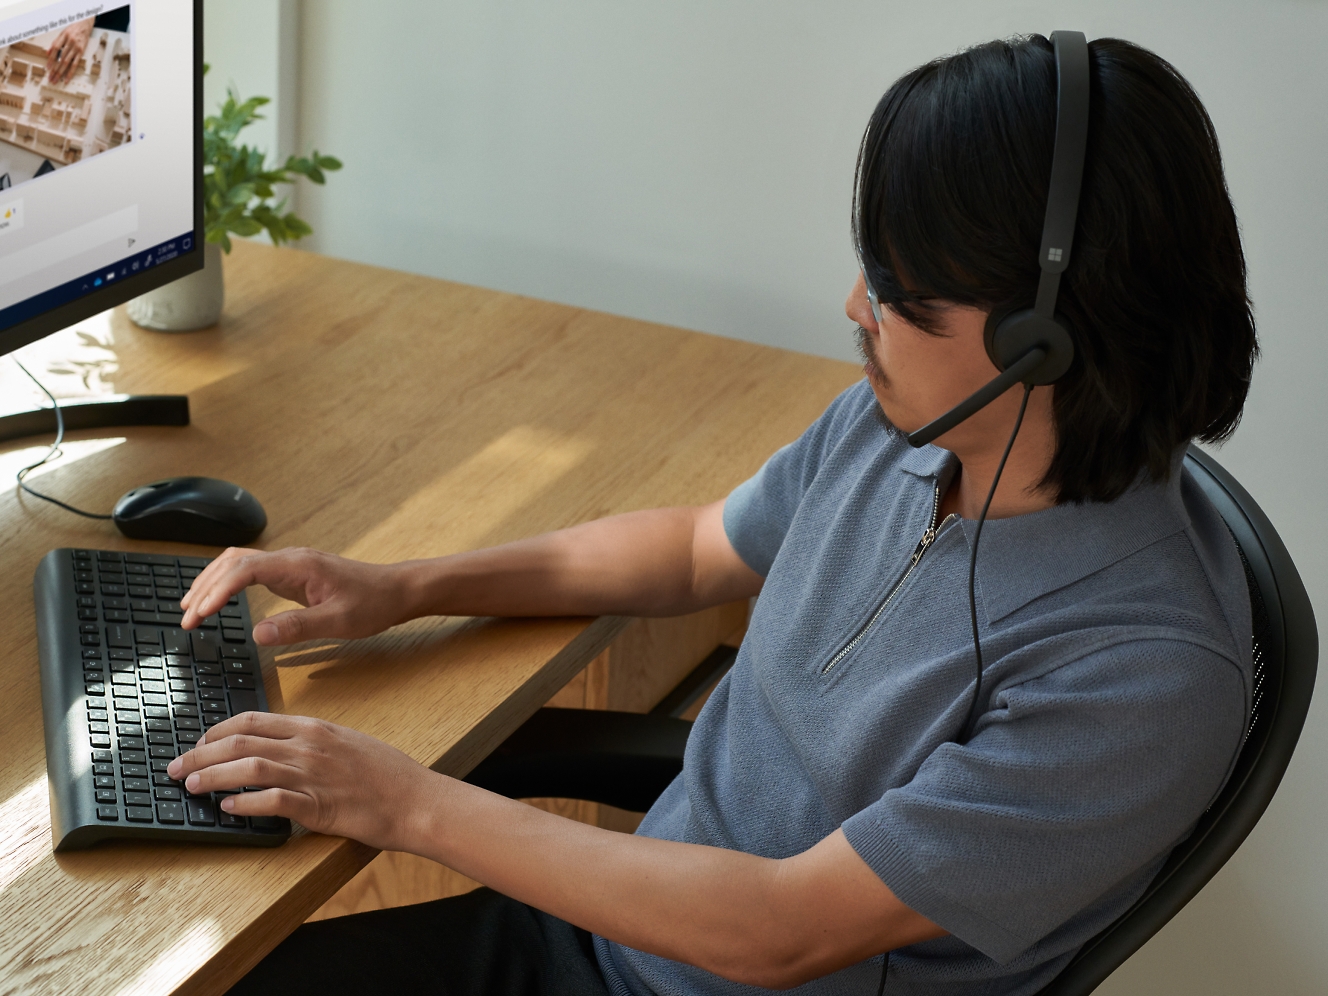 גבר מרכיב אוזניות בזמן עבודה על מחשב.